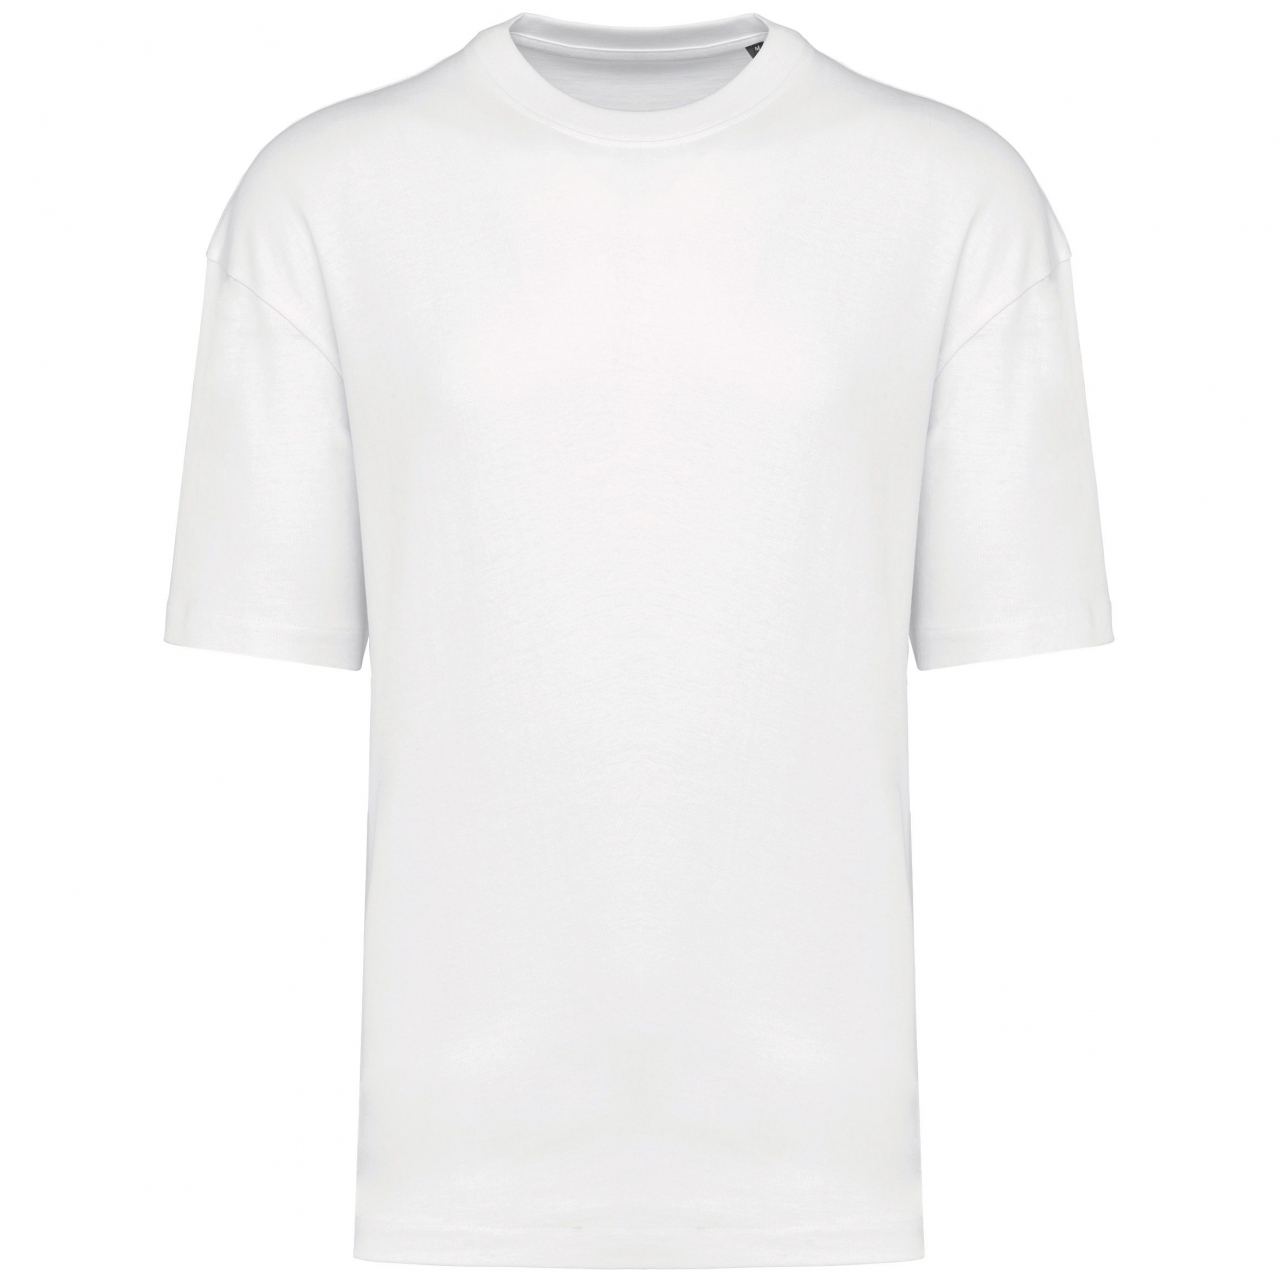 Pánské tričko Kariban Oversize - bílé, XXL